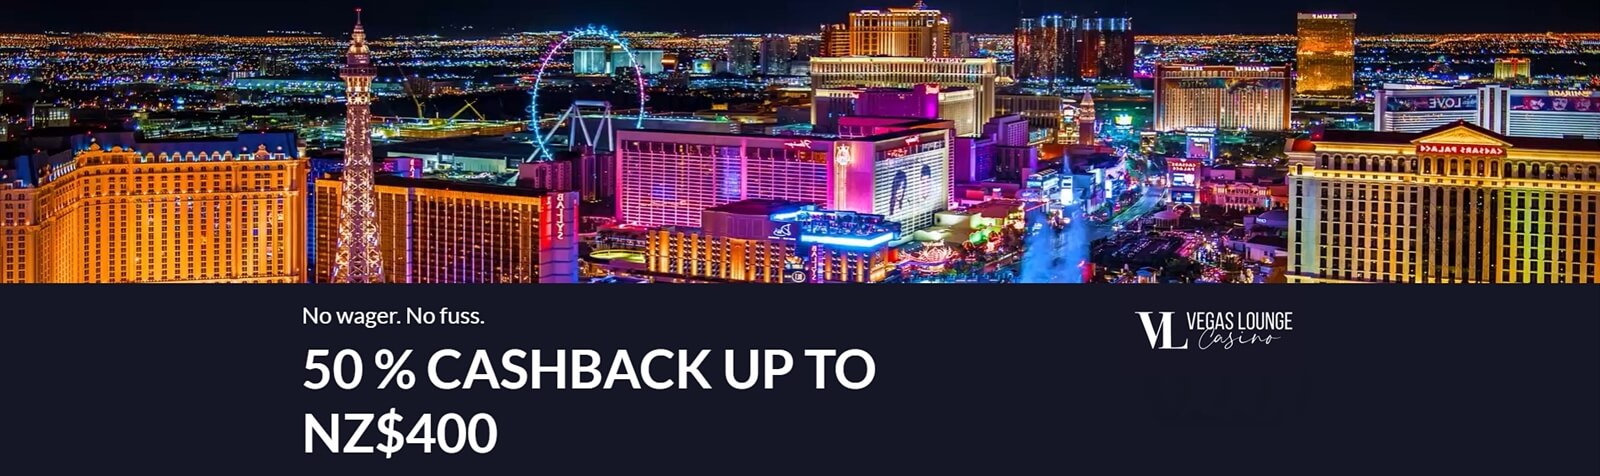 Vegas Lounge Cashback Bonus For New Zealand Players